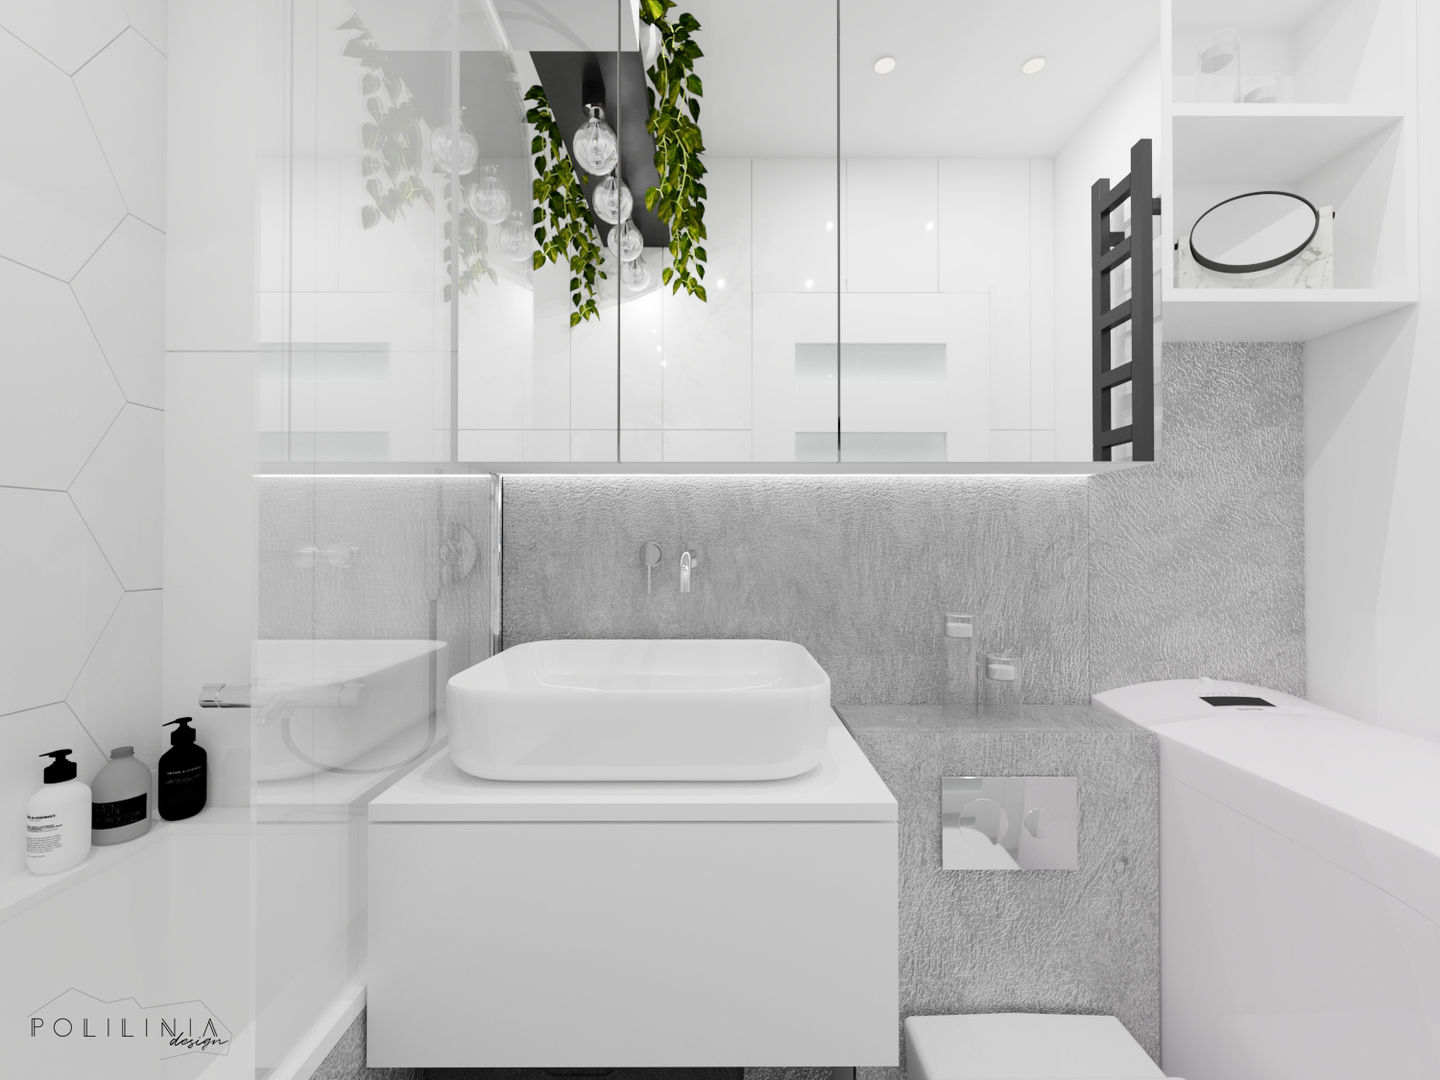 Biała łazienka, Polilinia Design Polilinia Design ห้องน้ำ